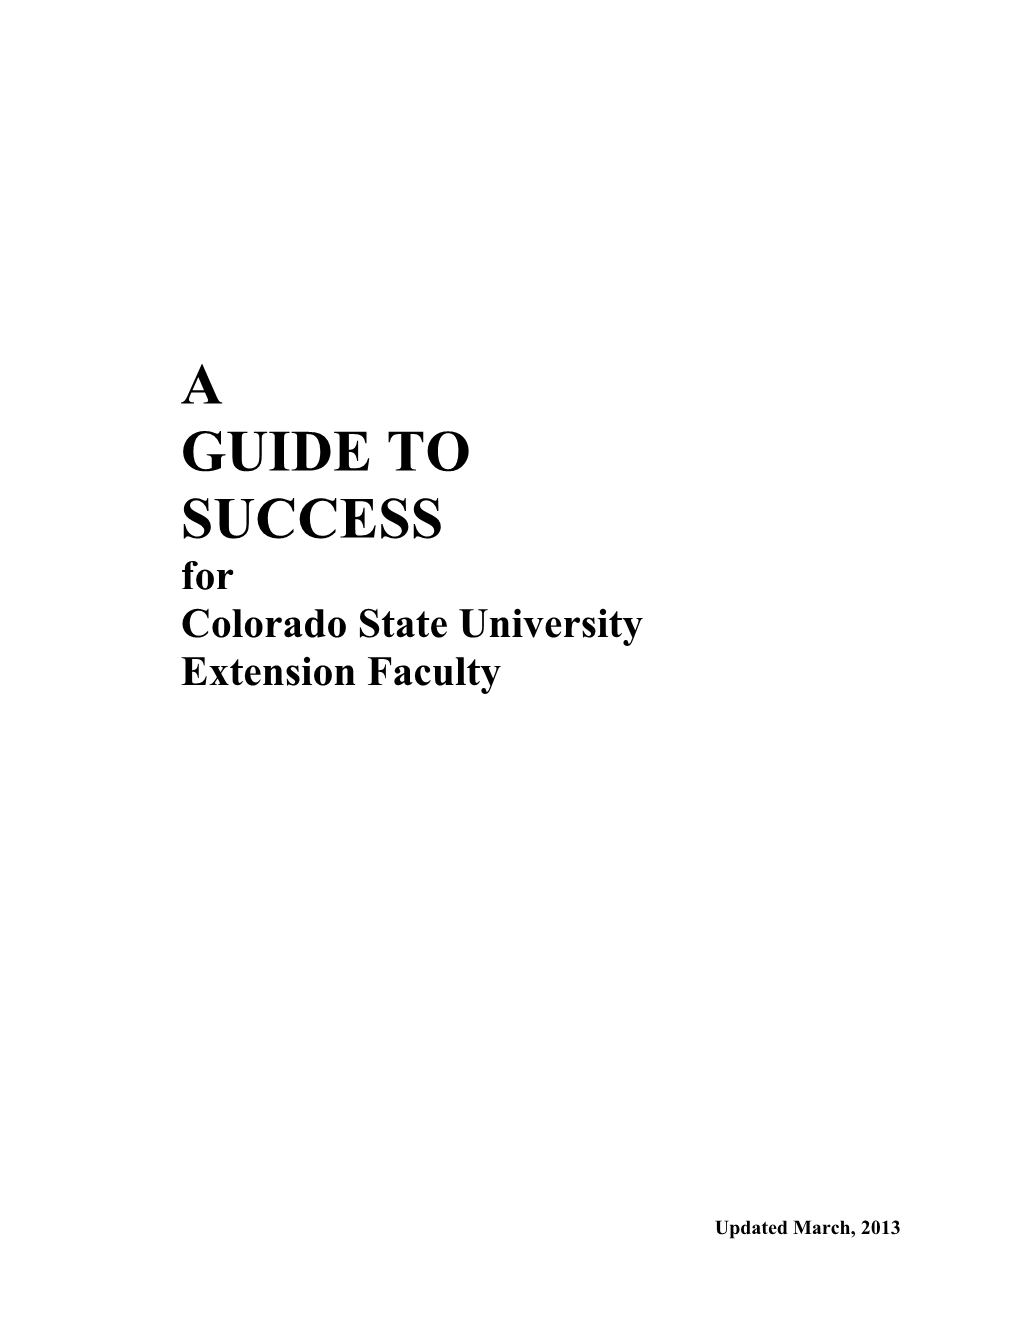 Colorado State University s1